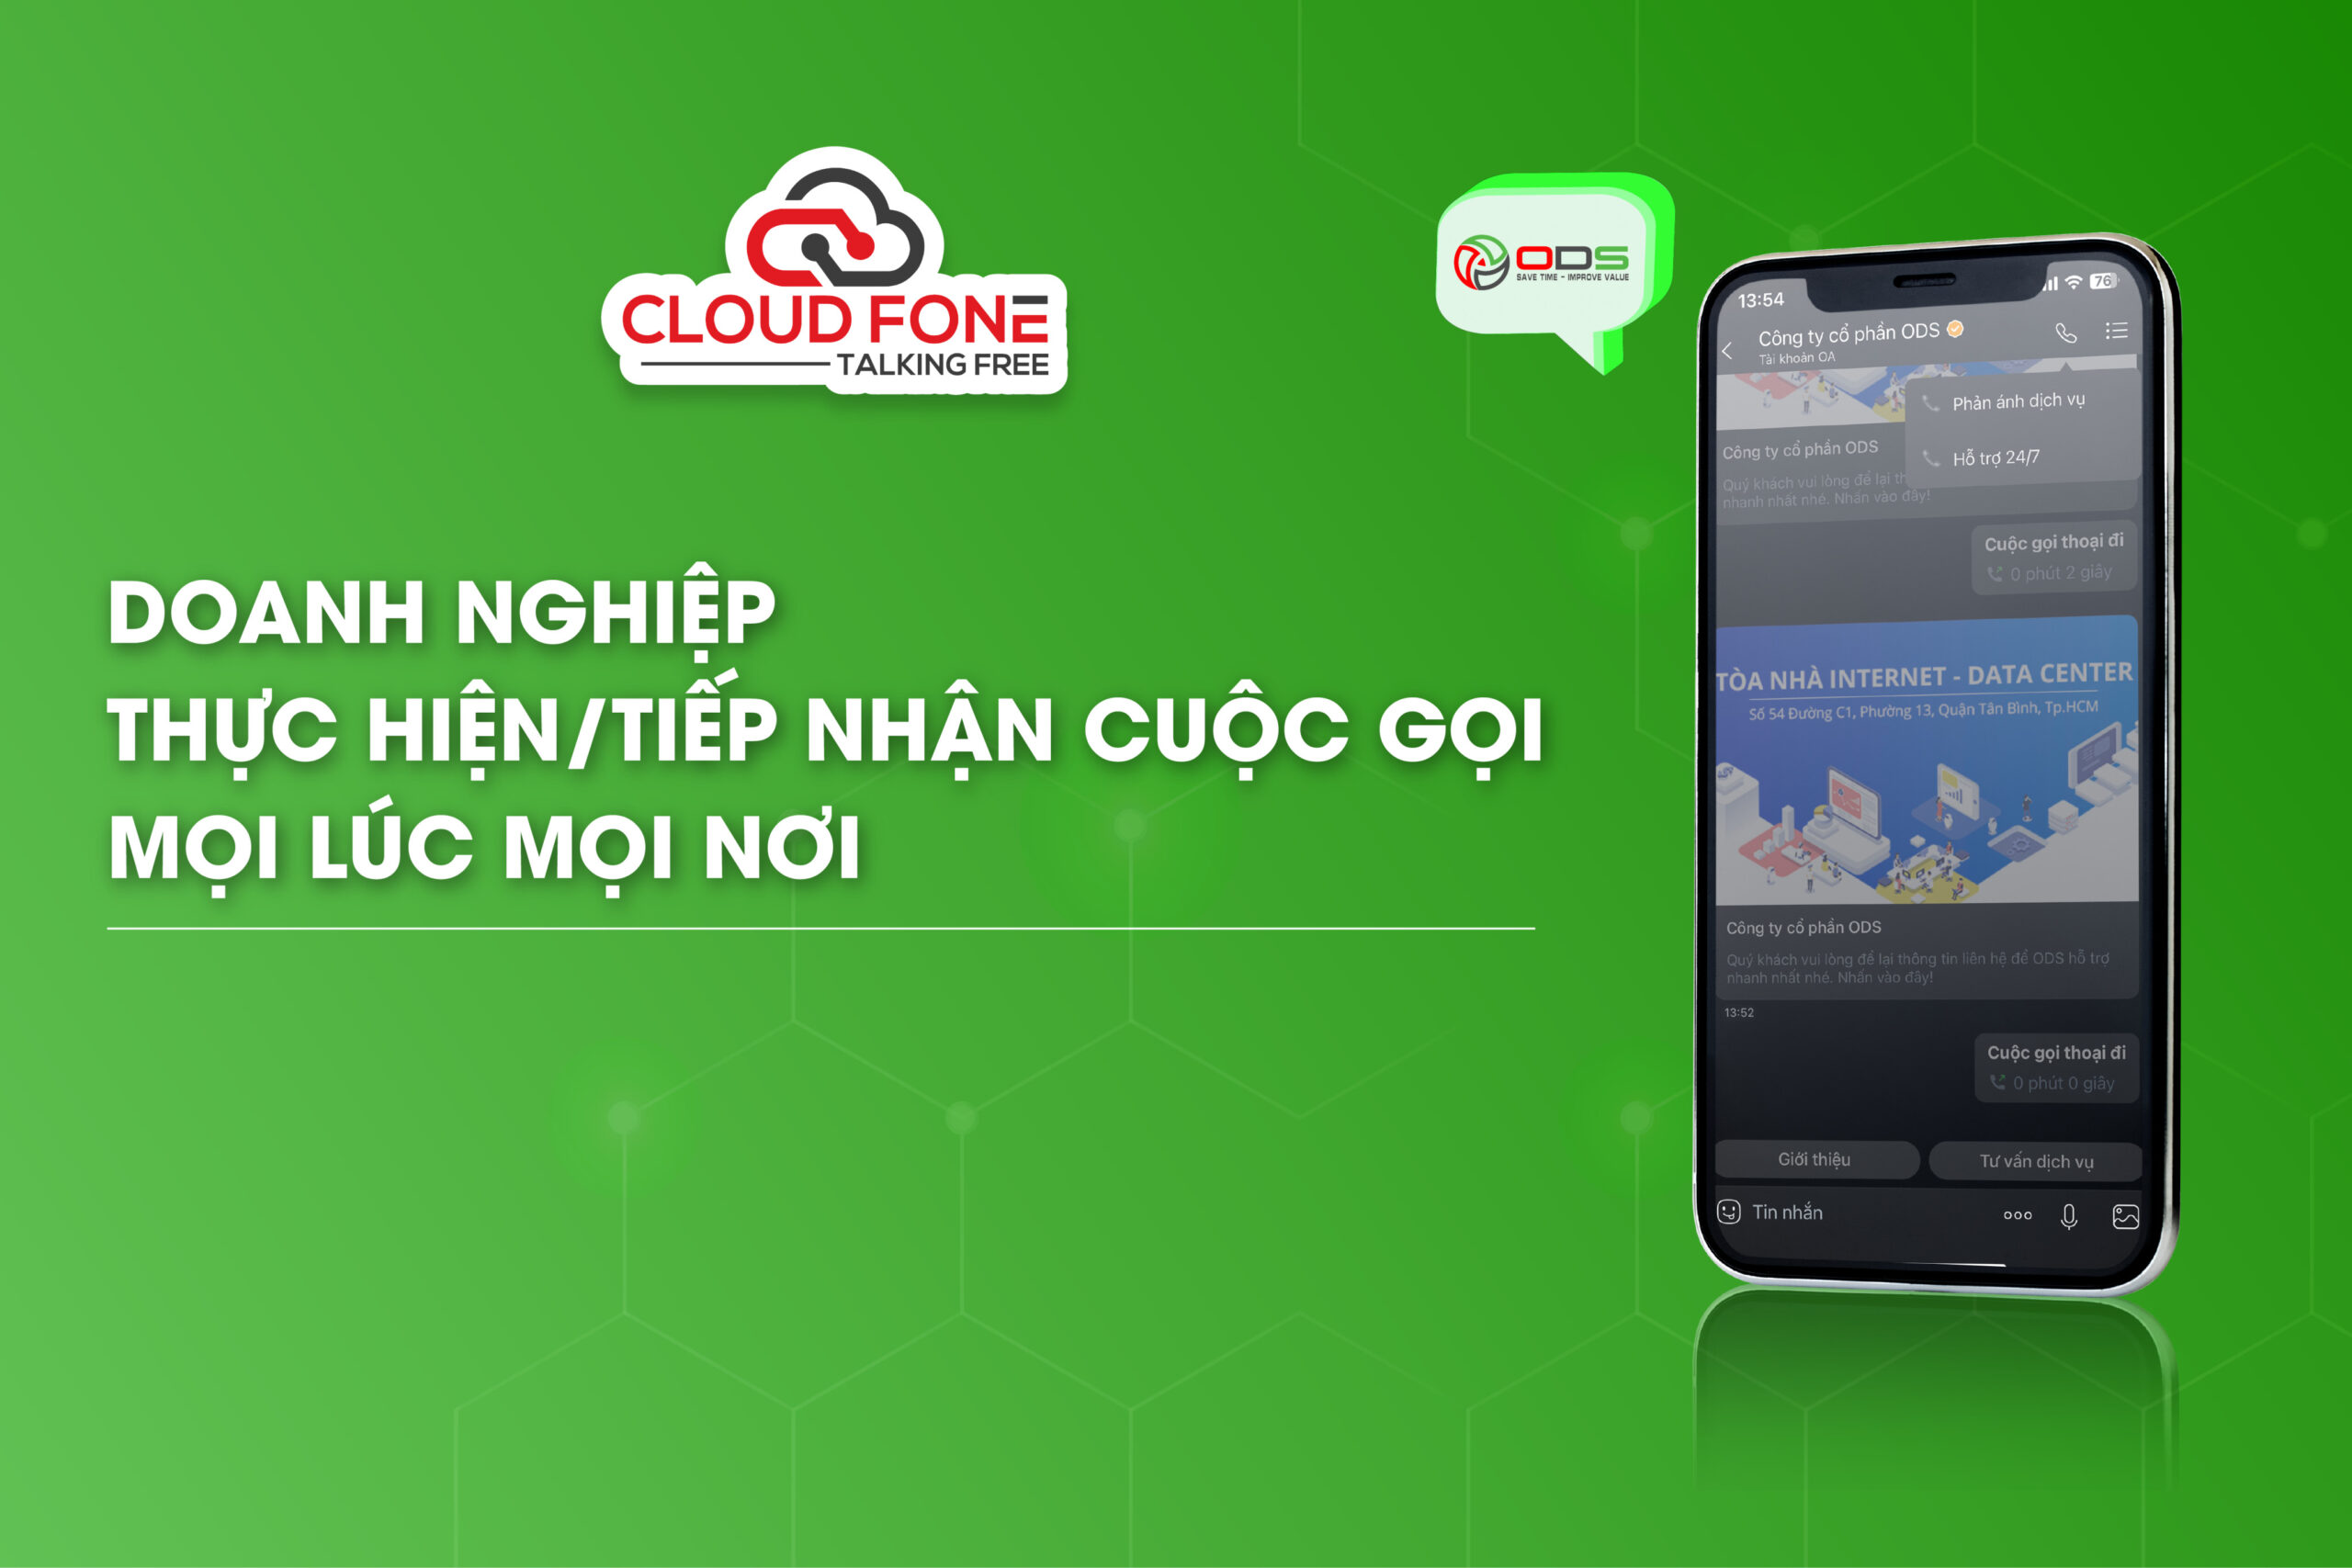 Doanh nghiệp dễ dàng thực hiện/ tiếp nhận cuộc gọi với CloudFone